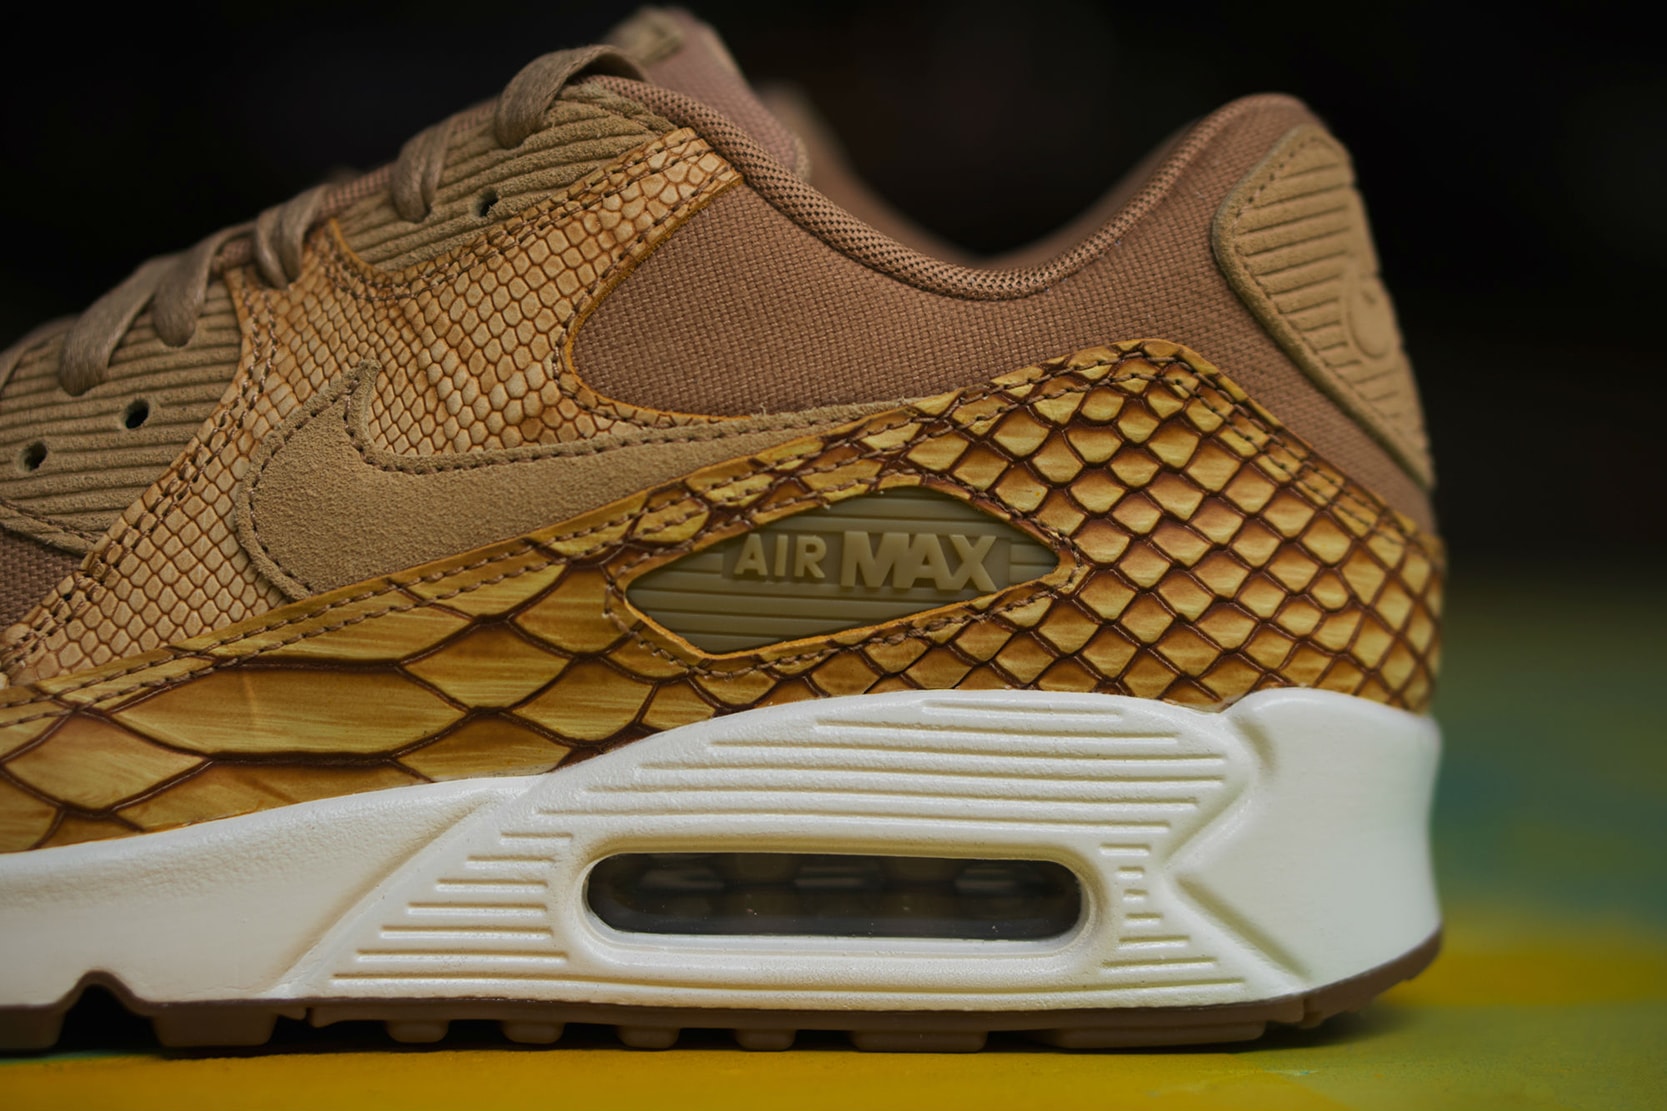 Nike Air Max 90 Premium Reptile Leather Shoe closer look